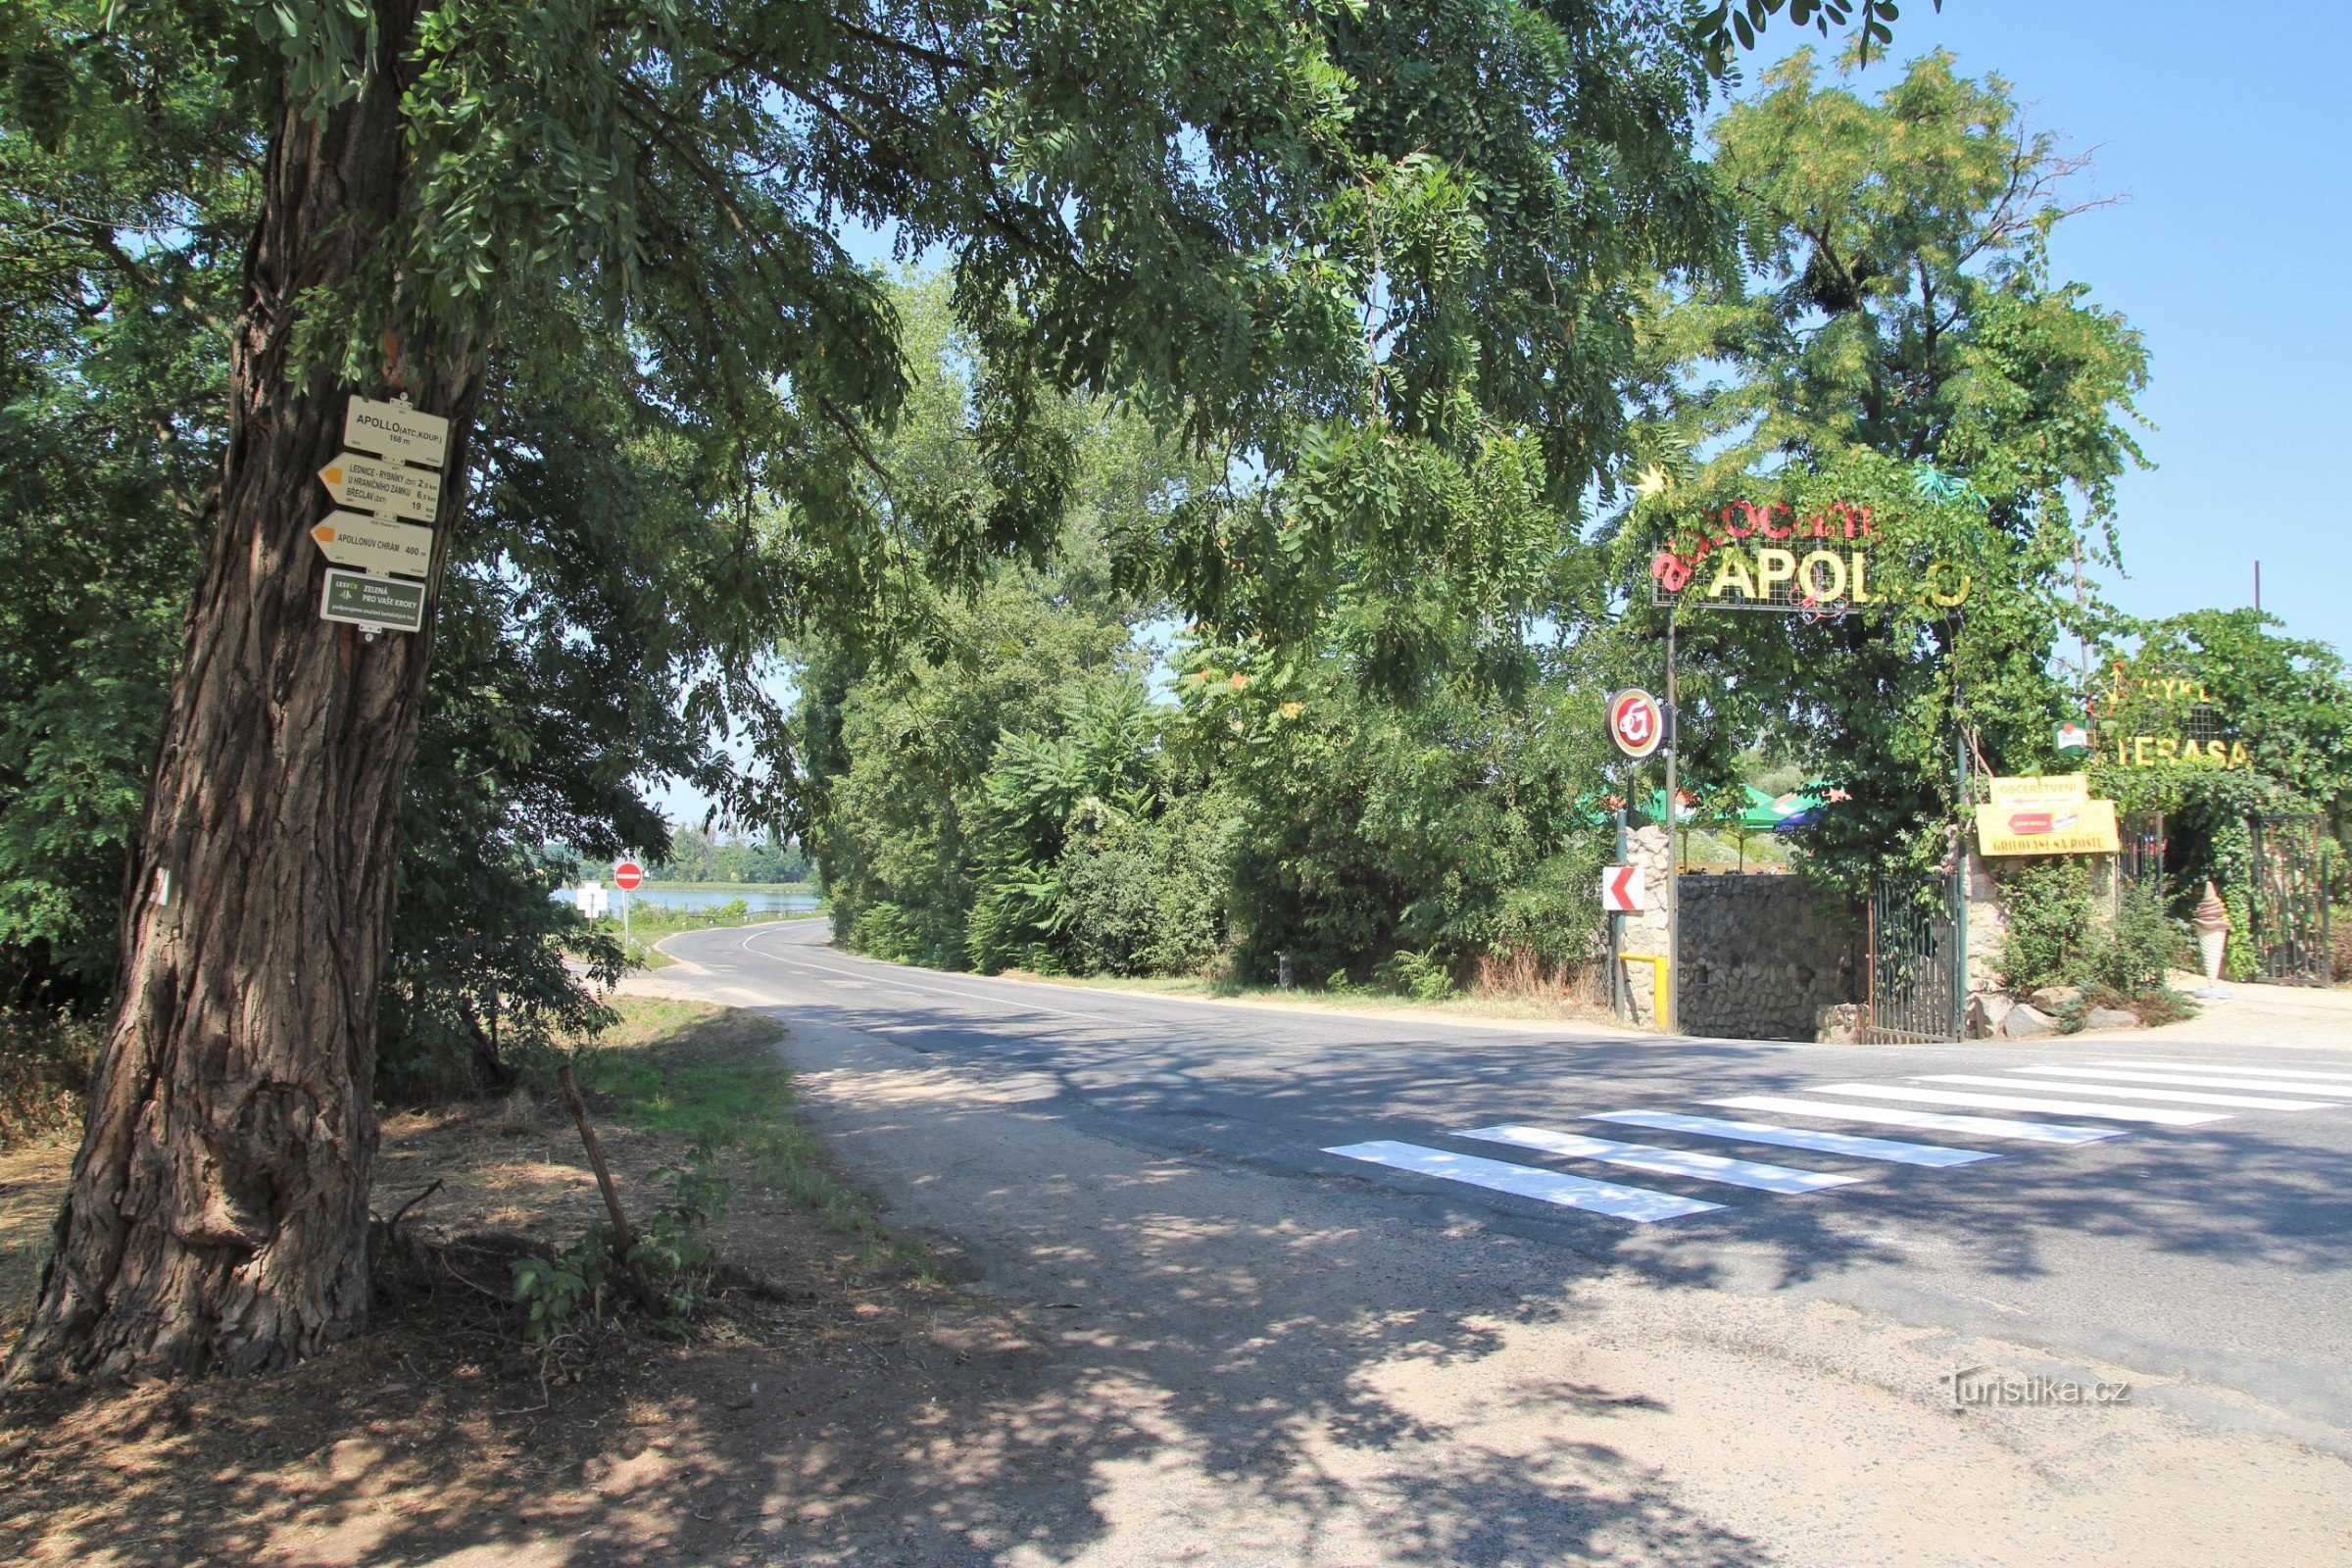 Apollon turistiristeys sijaitsee samannimisen leirin sisäänkäyntiä vastapäätä